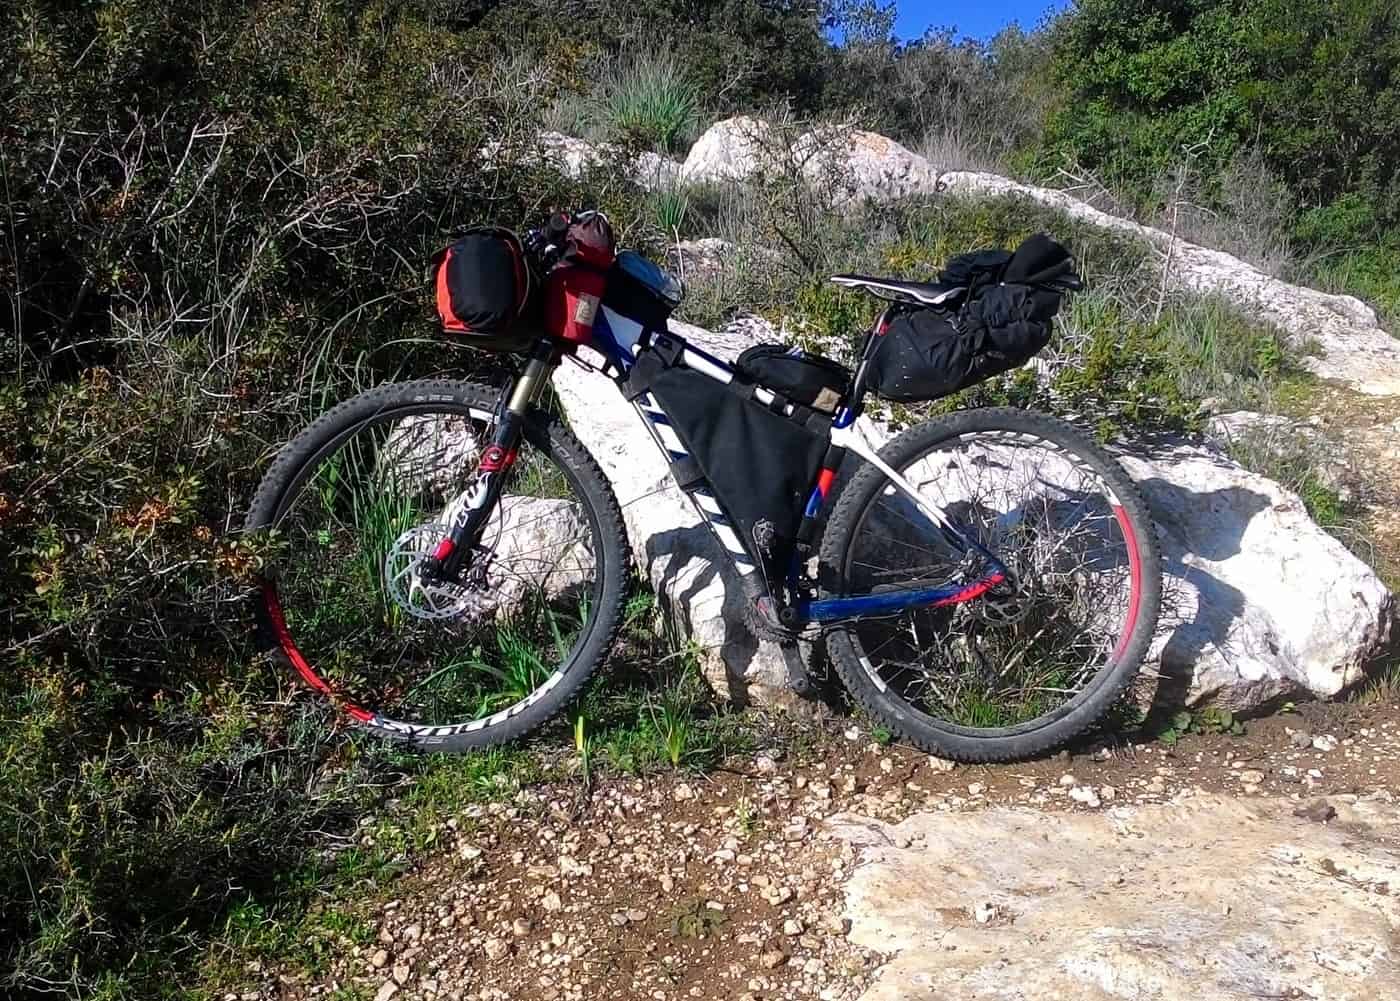 אלדד פז מ-Funkier רכב על אופני הסקוט קרבוו זנב קשיח שלו במצב בייק פאקינג מלא ומאתגר. צילום: עצמי